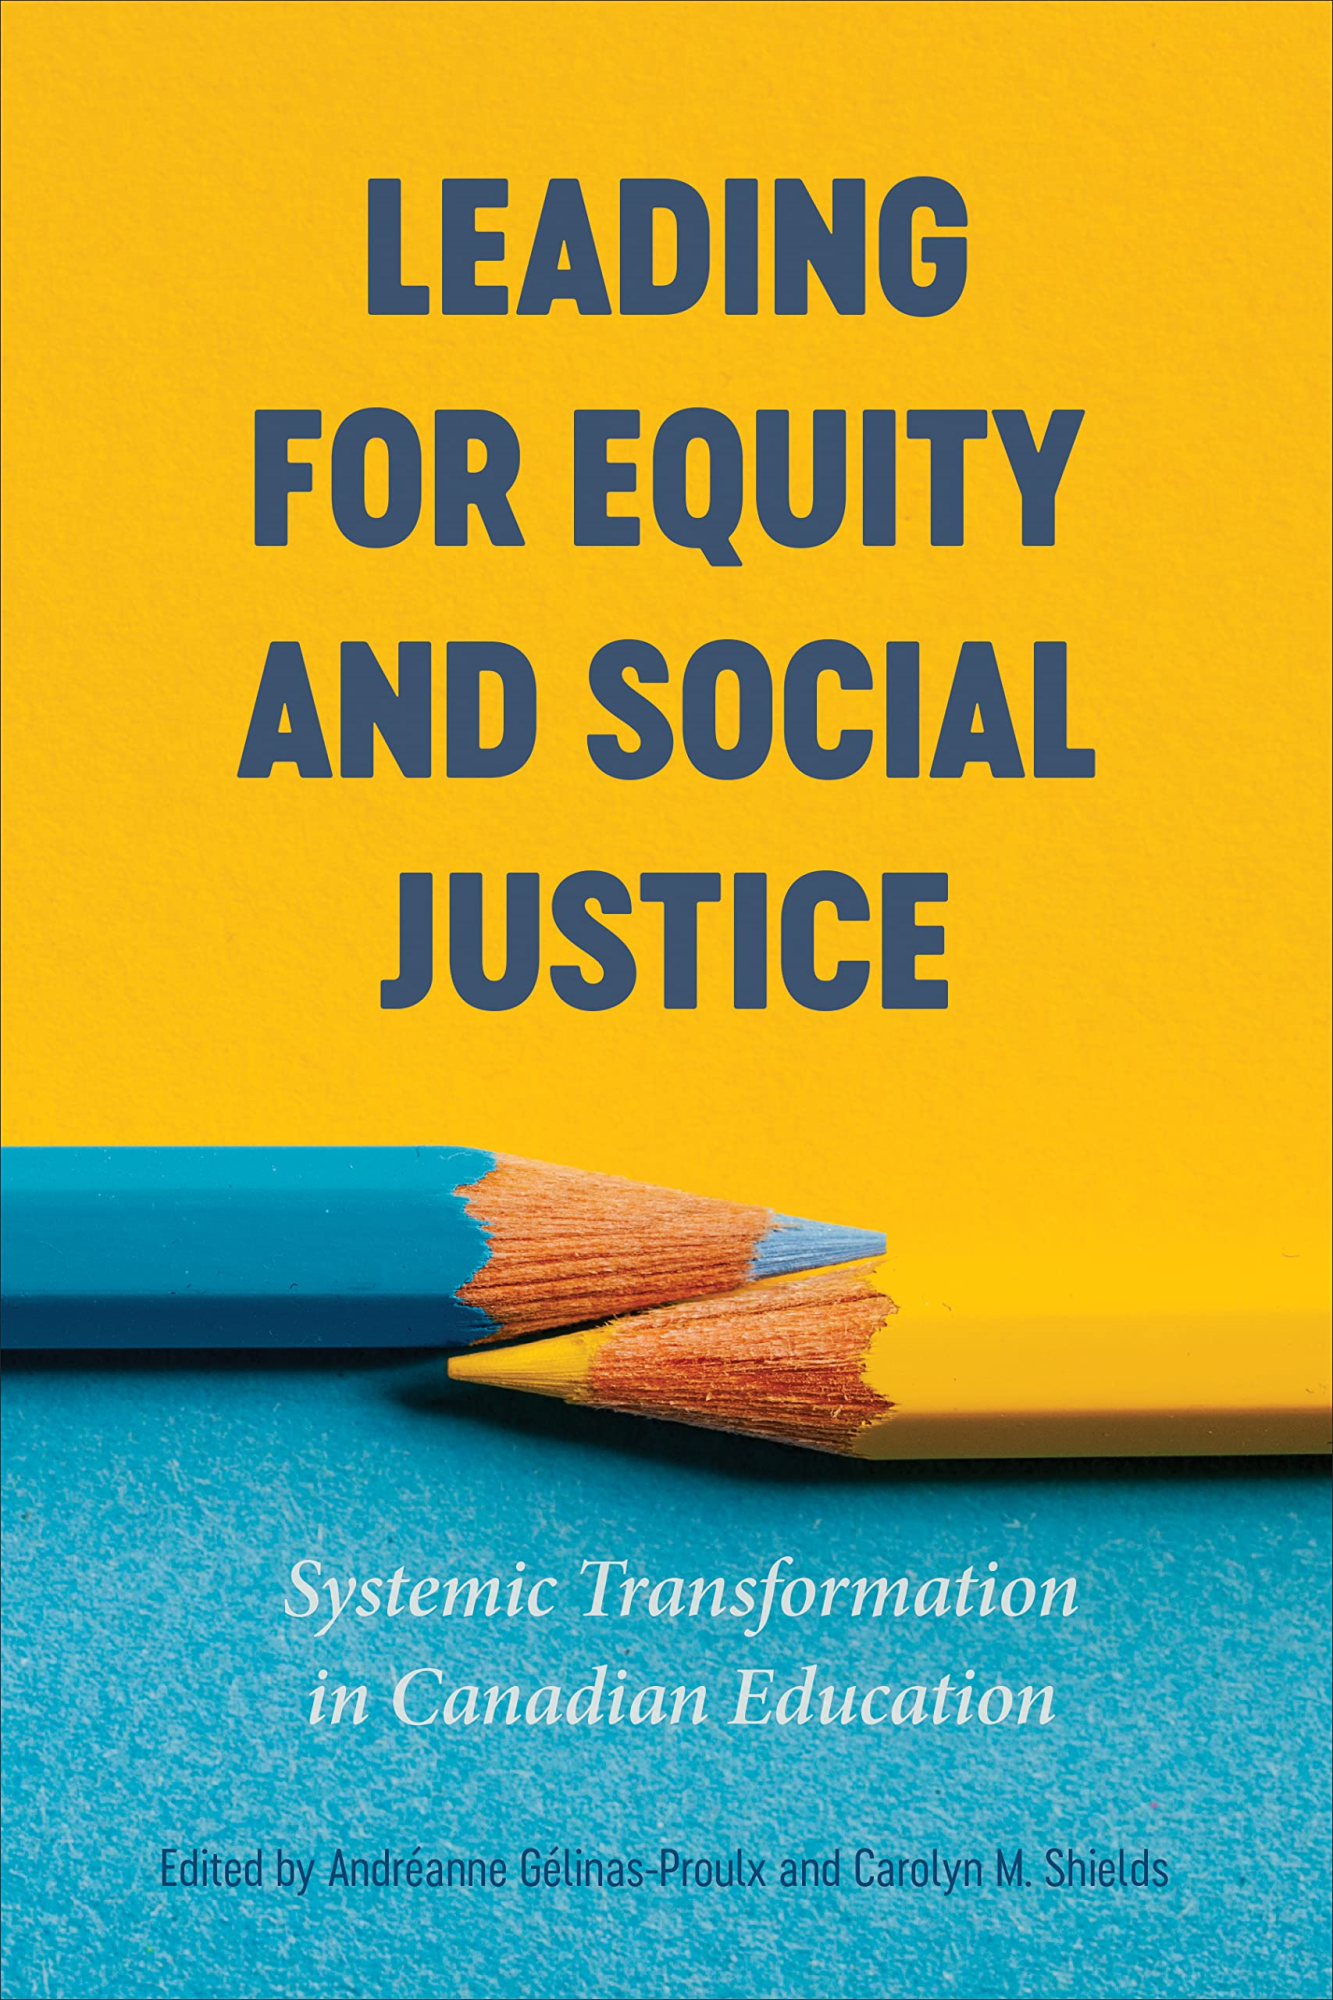 Libri Andreanne Gelinas-Proulx , Carolyn M. Shields - Leading For Equity And Social Justice NUOVO SIGILLATO, EDIZIONE DEL 11/06/2022 SUBITO DISPONIBILE